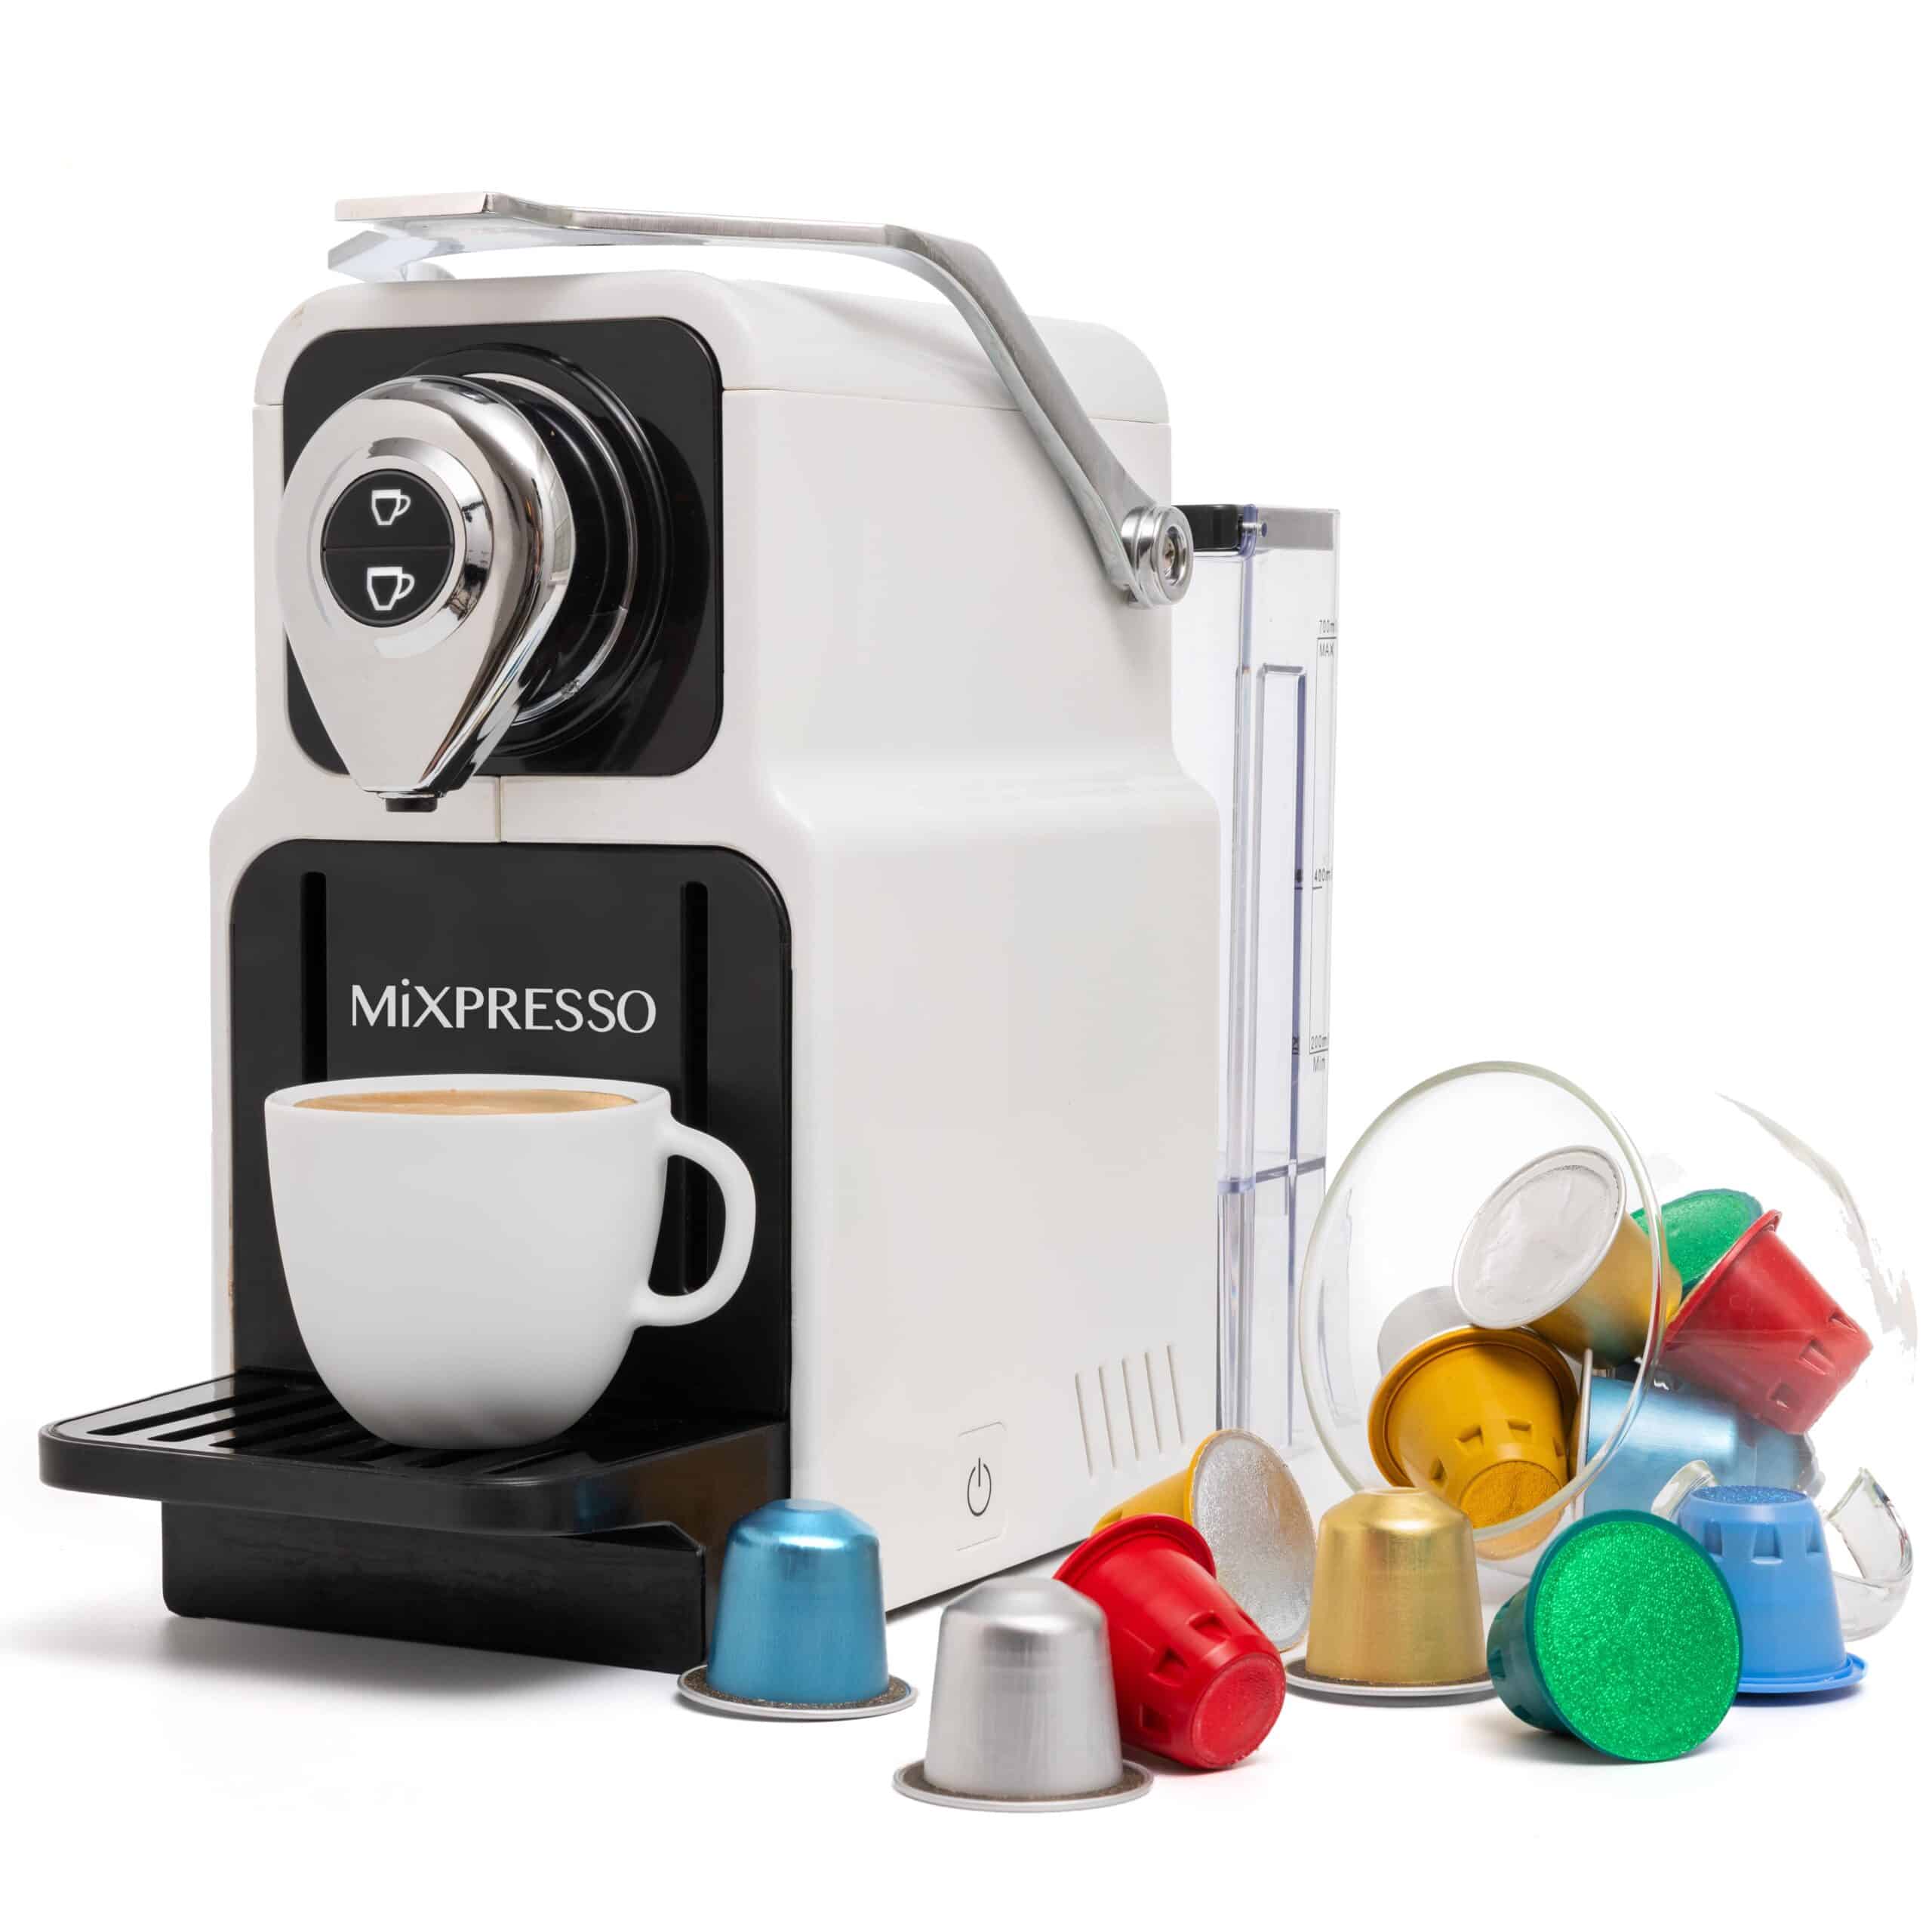 Mixpresso Espresso Machine for Nespresso Compatible Capsule, Single Serve Coffee Maker Programmable Espresso Pods, Premium Italian 19 Bar High Pressure Pump 23oz (White) - Mixpresso